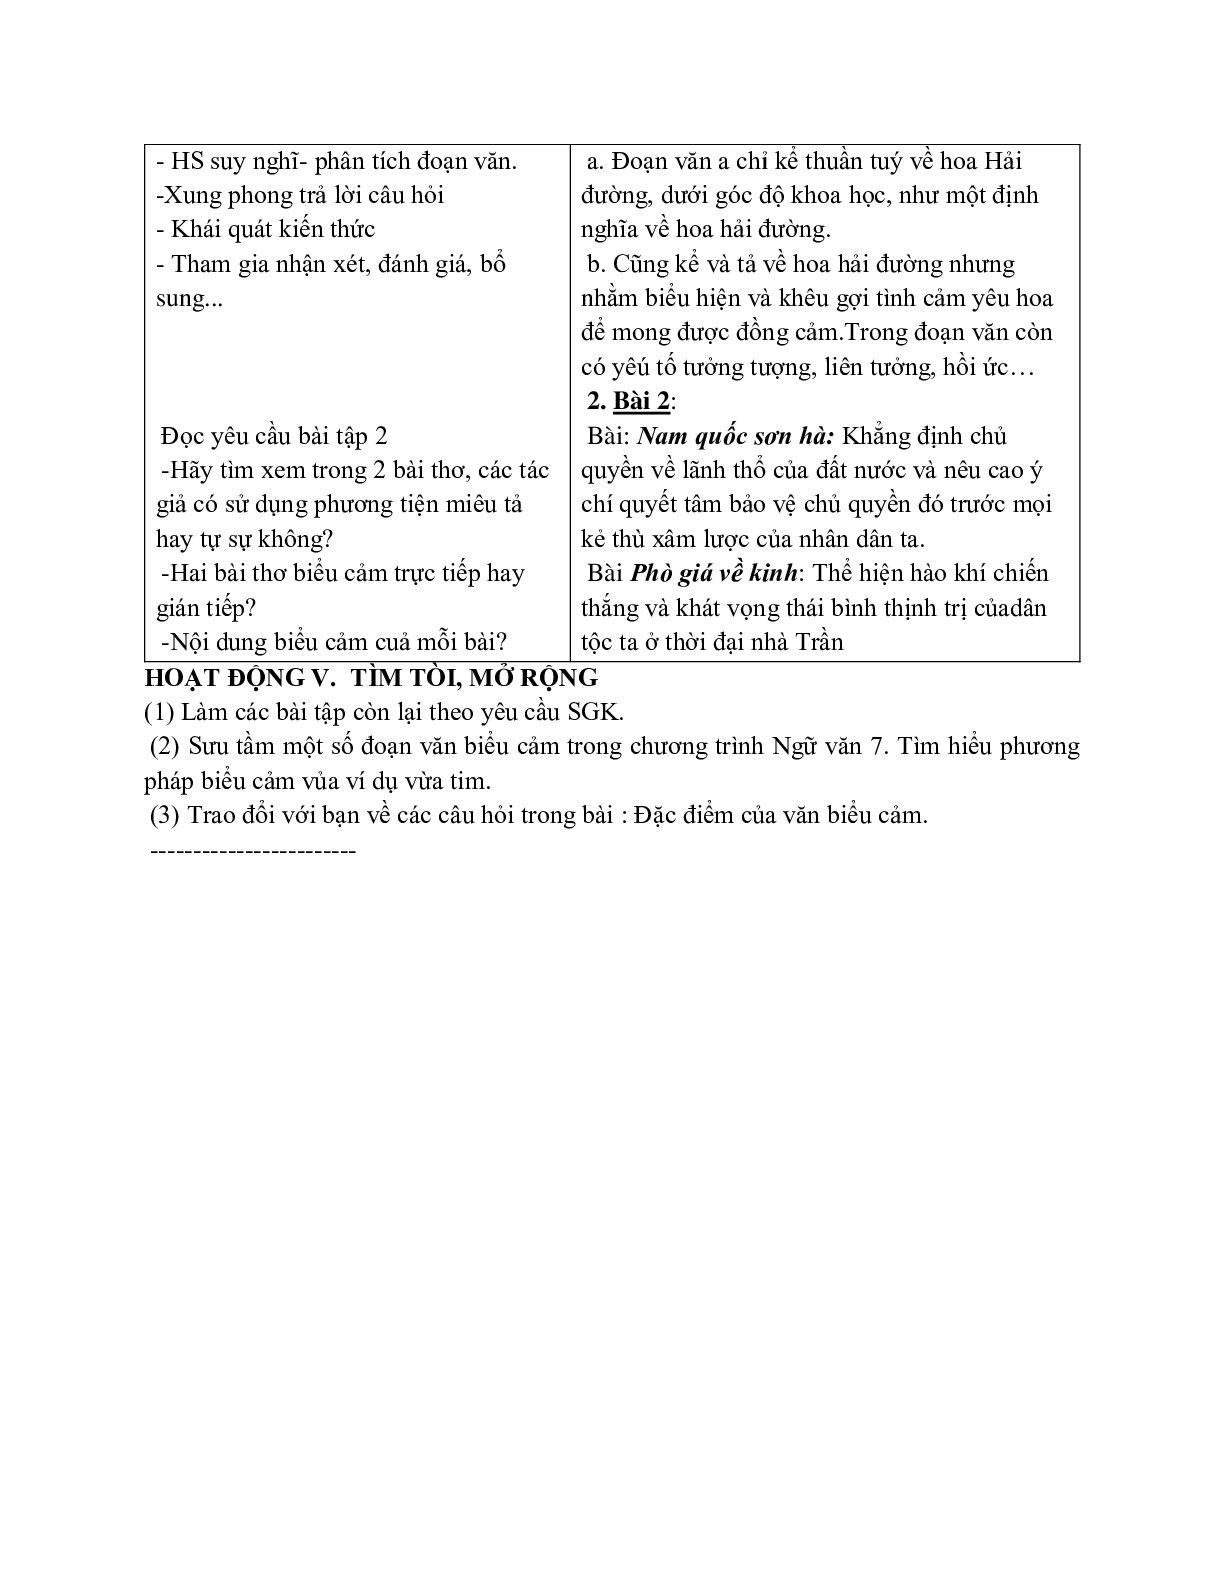 Giáo án ngữ văn lớp 7 Tuần 6 Tiết 21: Tìm hiểu chung về văn biểu cảm mới nhất (trang 4)